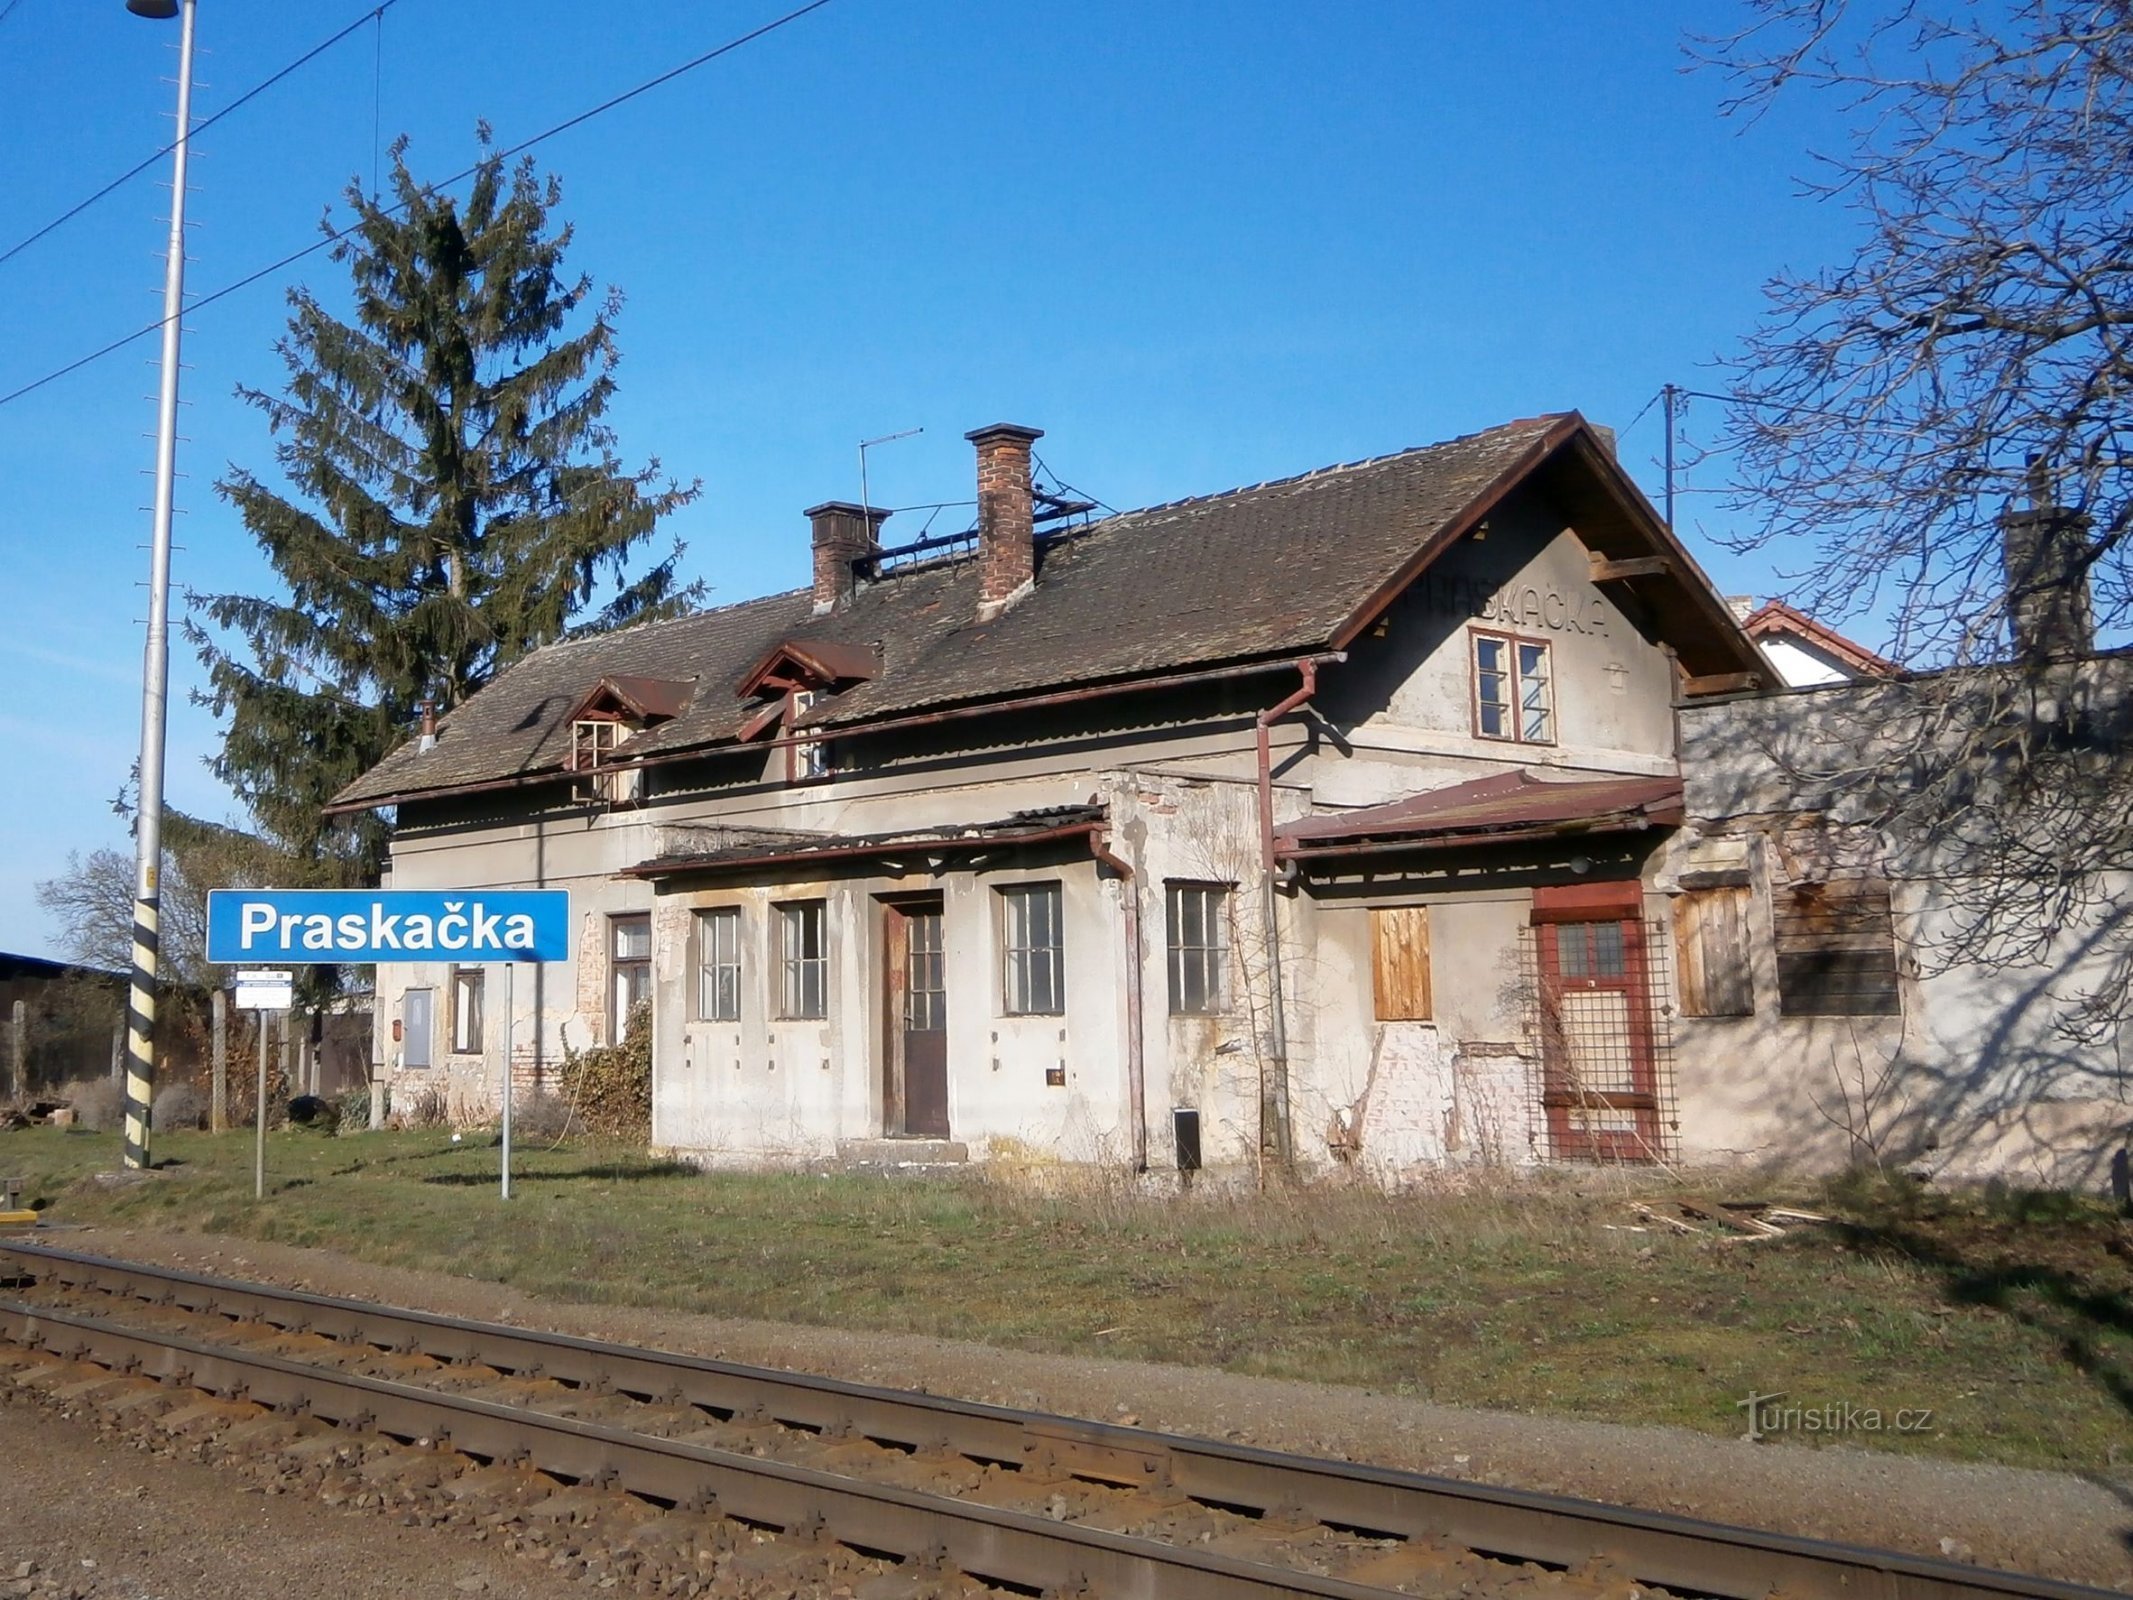 すでに取り壊された古い鉄道駅 (Praskačka、26.3.2017 年 XNUMX 月 XNUMX 日)